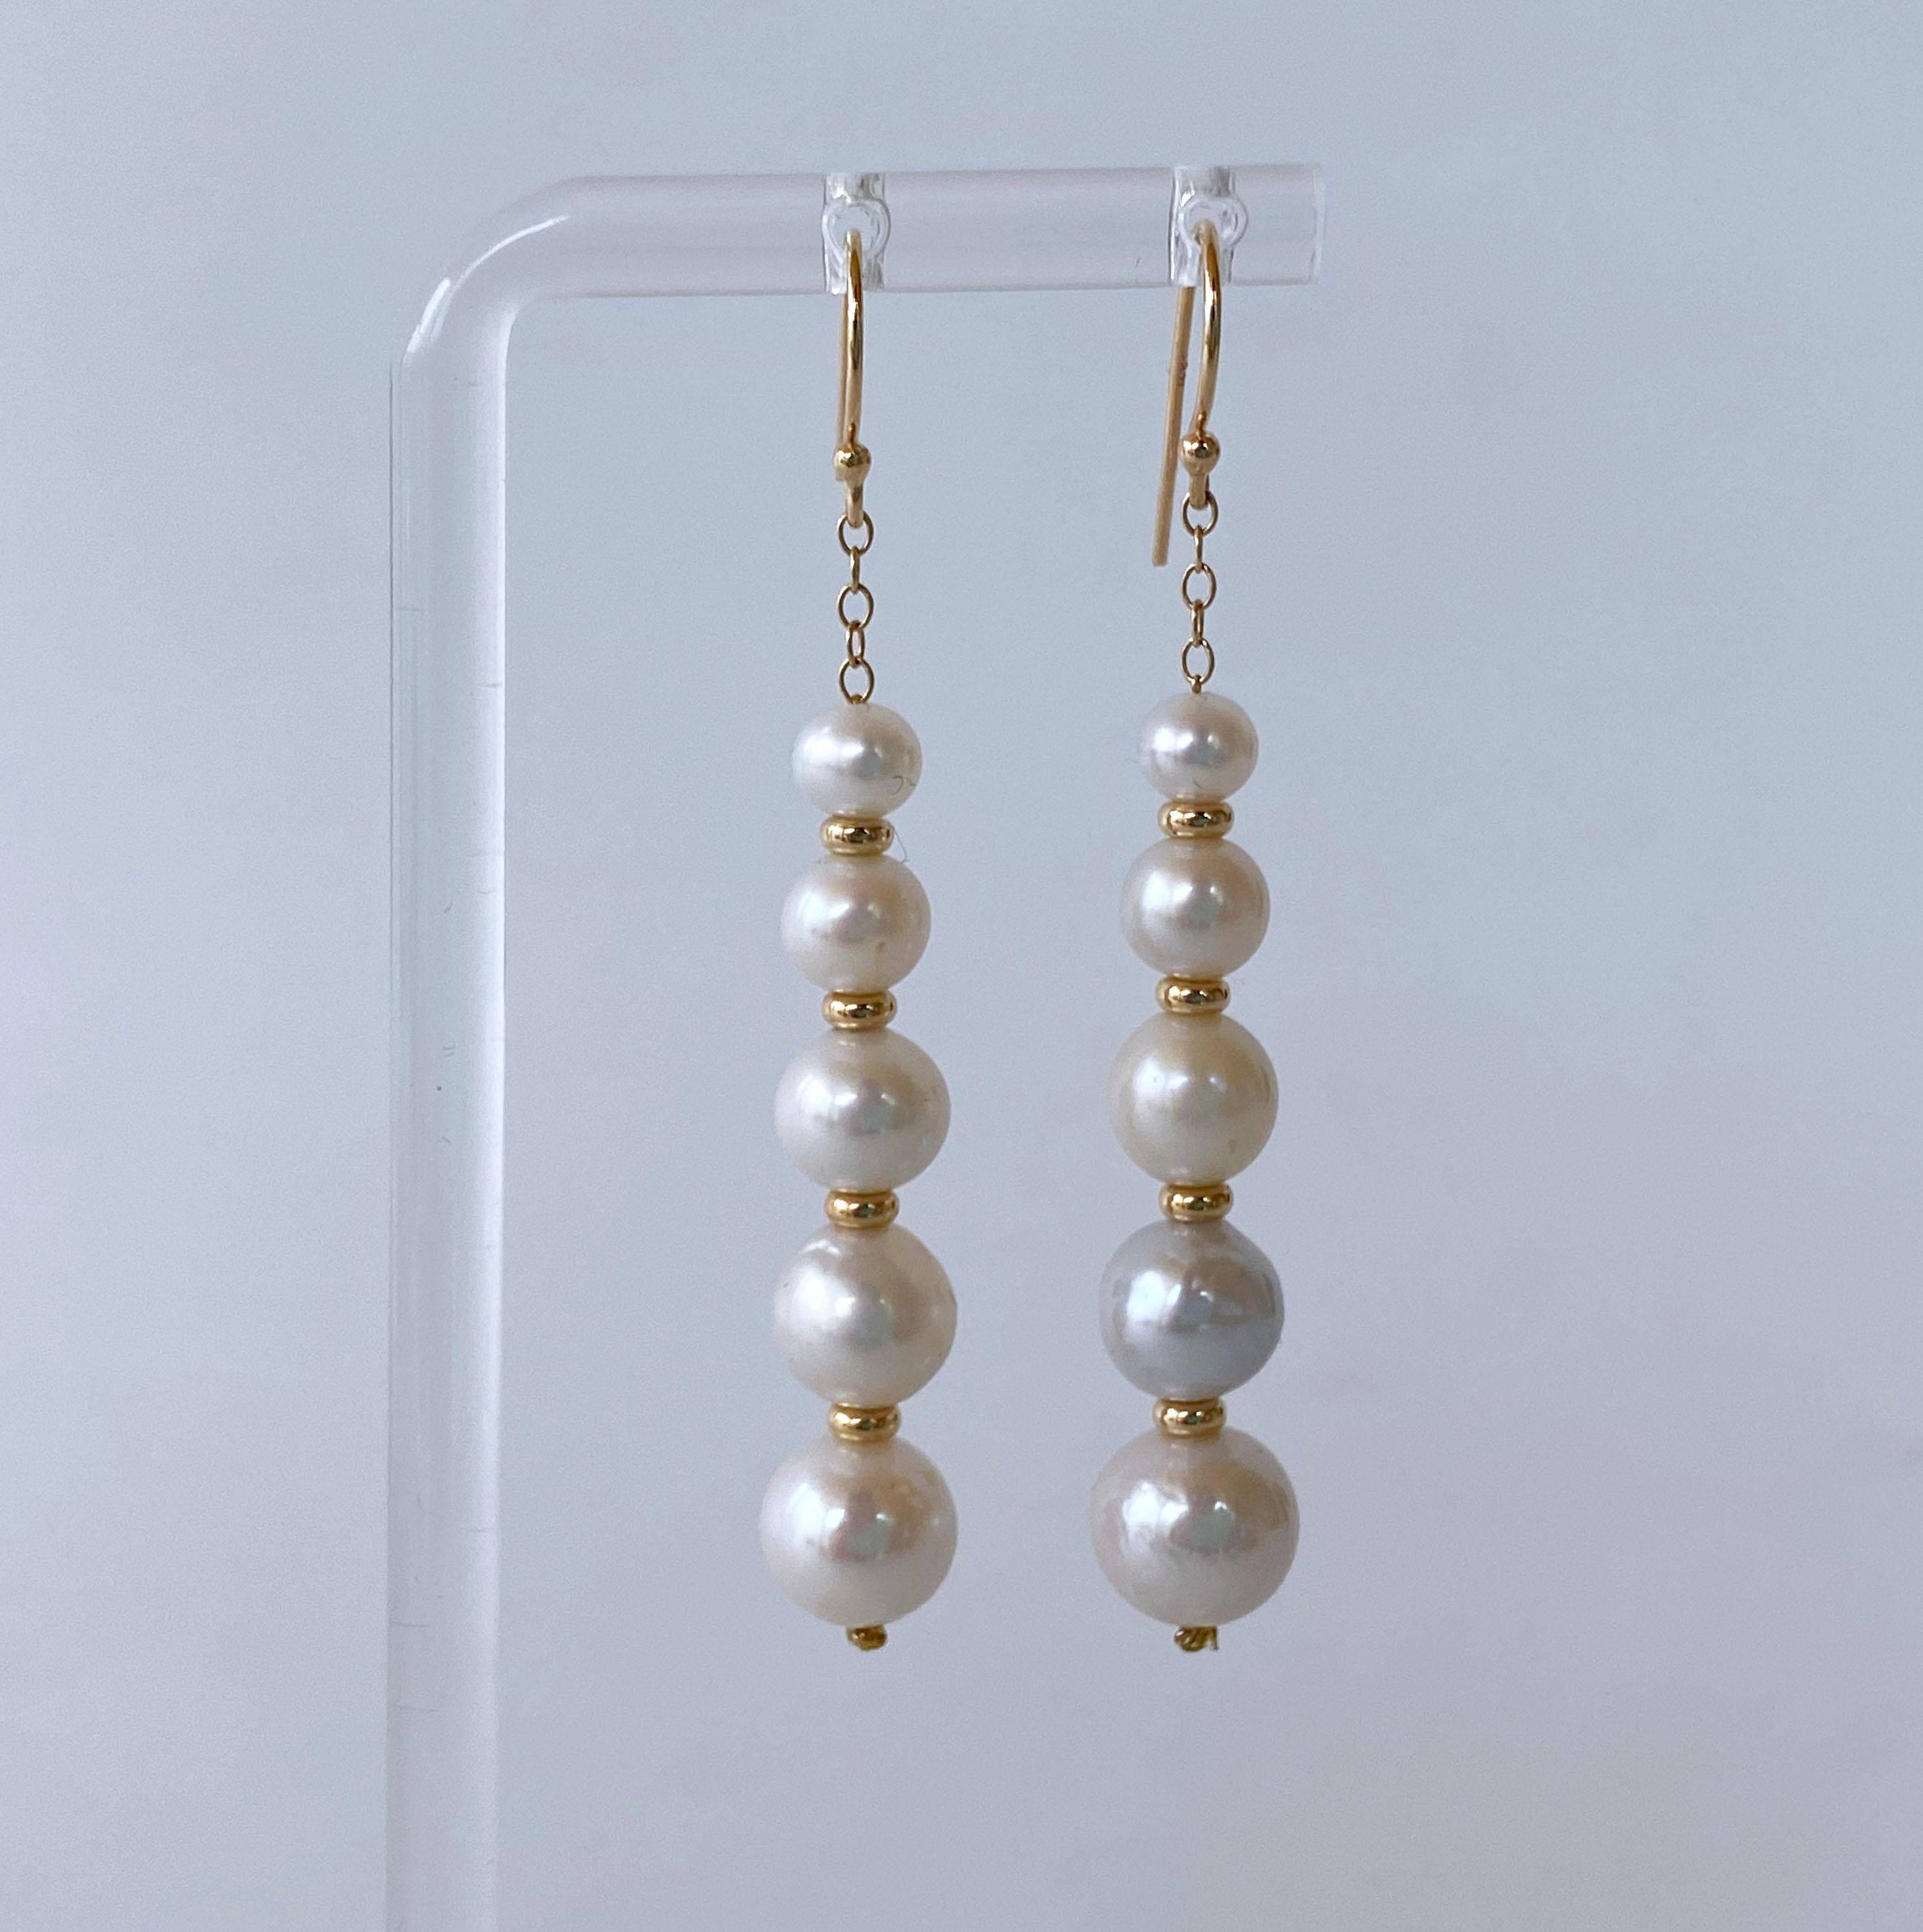 Schöne und elegante Paar Ohrringe von Marina J. Dieses Paar ist mit allen massiven 14k Gelbgold Kette, Haken und Perlen gemacht. Eine Reihe von Perlen Abstufung in der Größe hängen aus massivem 14k Gelbgold Kette. Die weißen Perlen haben einen sanft